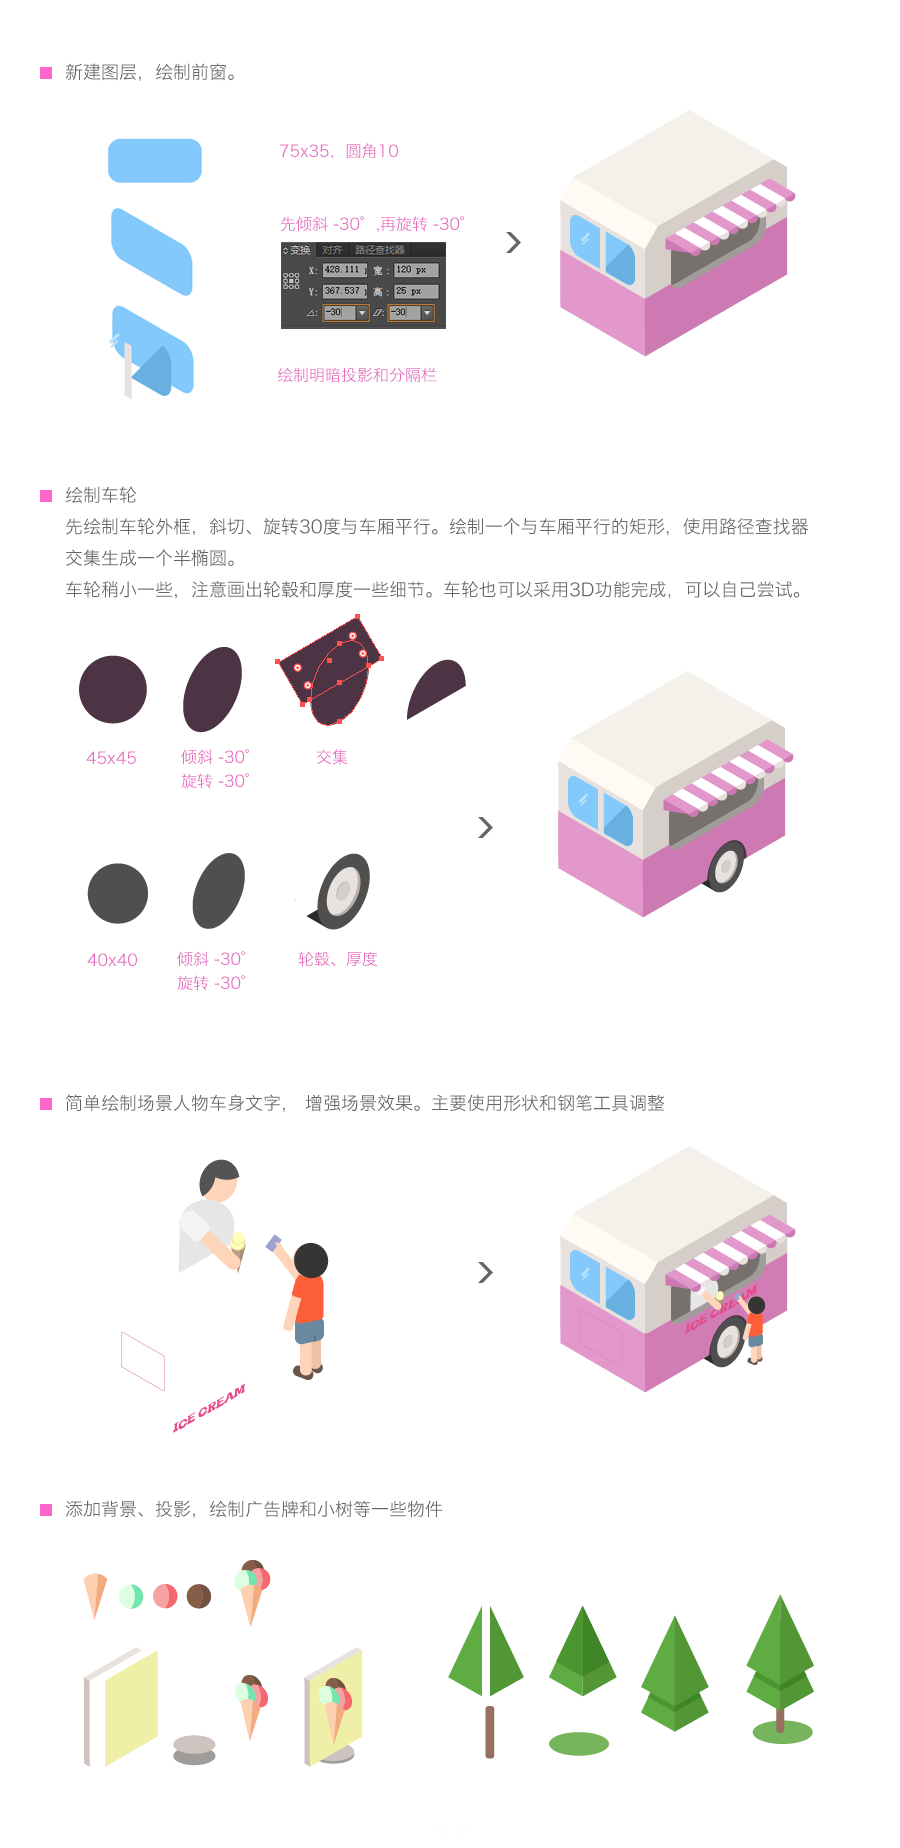 Illustrator快速制作2.5D风格冰淇淋车,PS教程,素材中国网